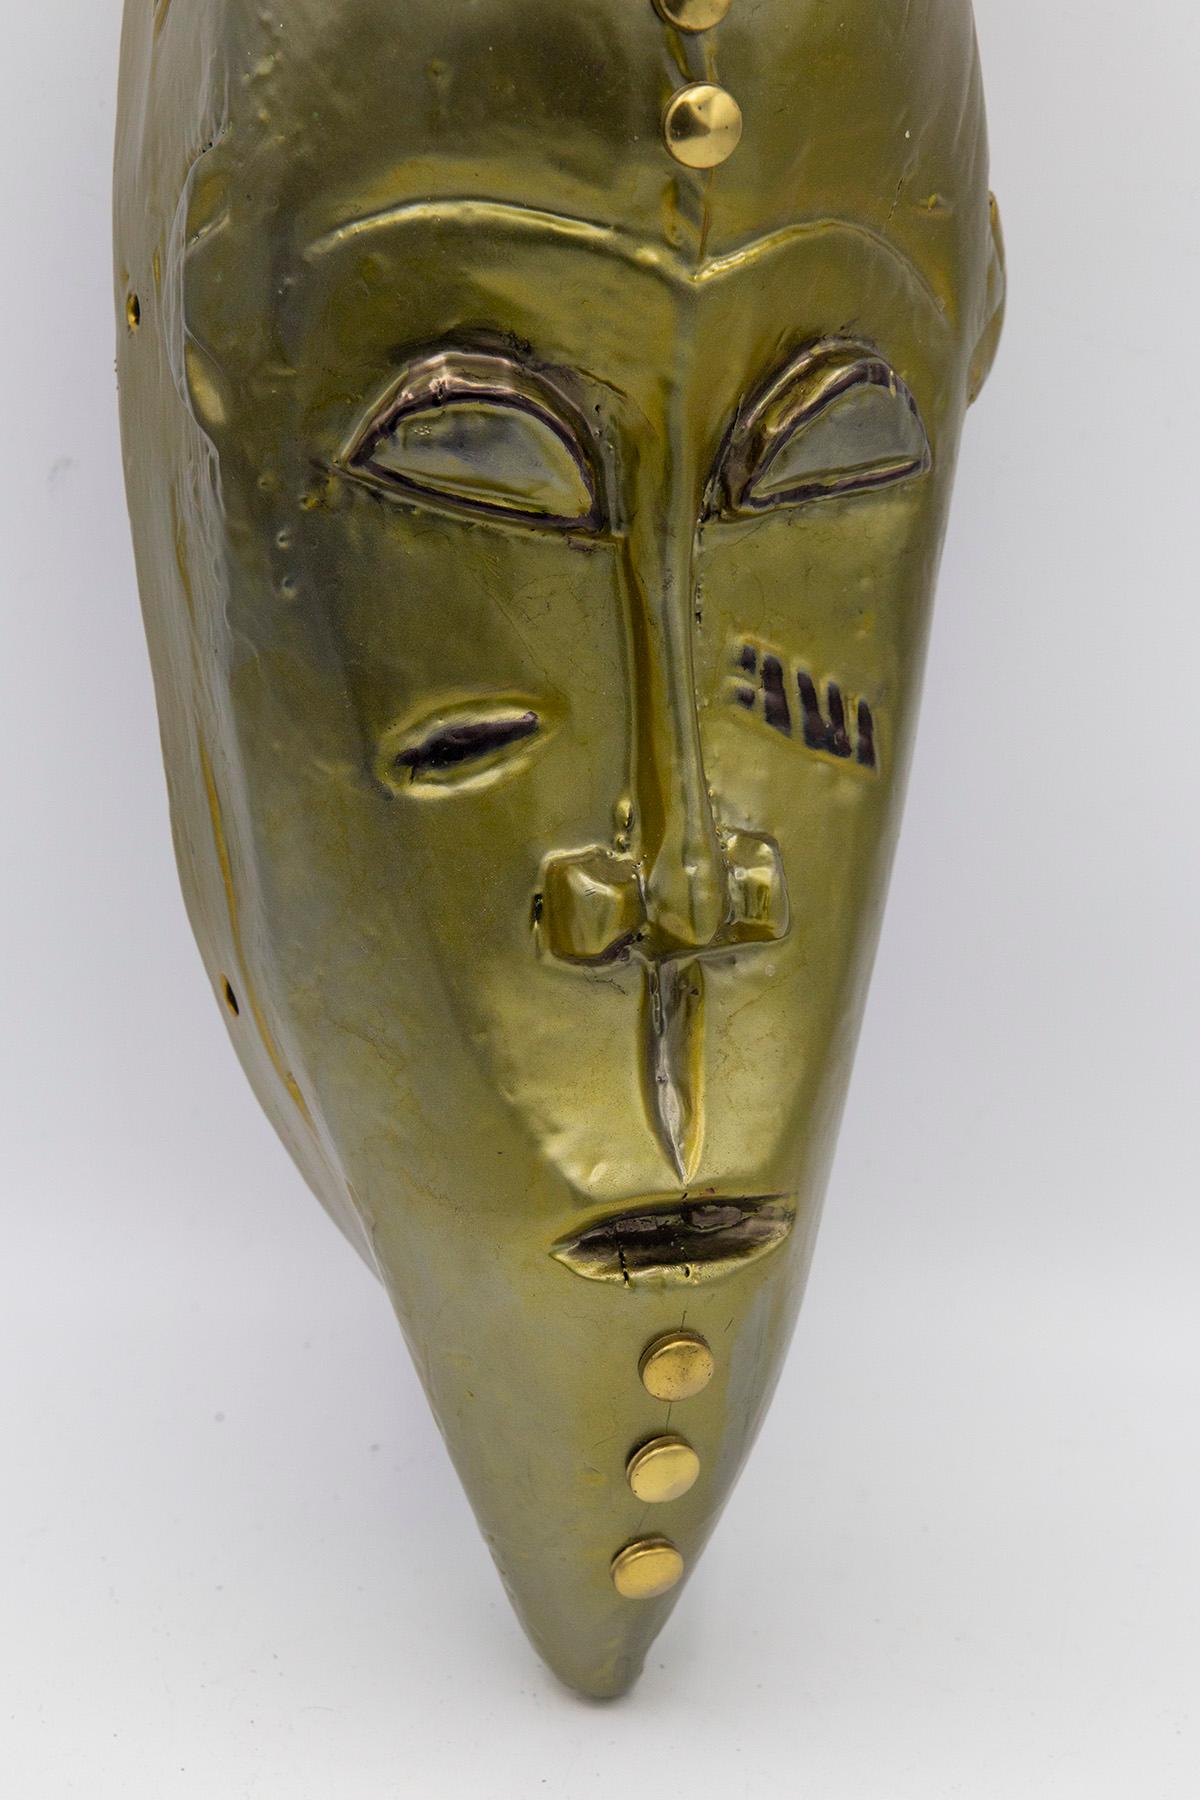 Masque africain unique créé par l'artiste Bomber Bax.
Le masque date du début des années 1900 et a ensuite été traité et peint fin 2022 par l'artiste.
L'artiste a utilisé des peintures métalliques spéciales pour évoquer un effet lunaire et attirer